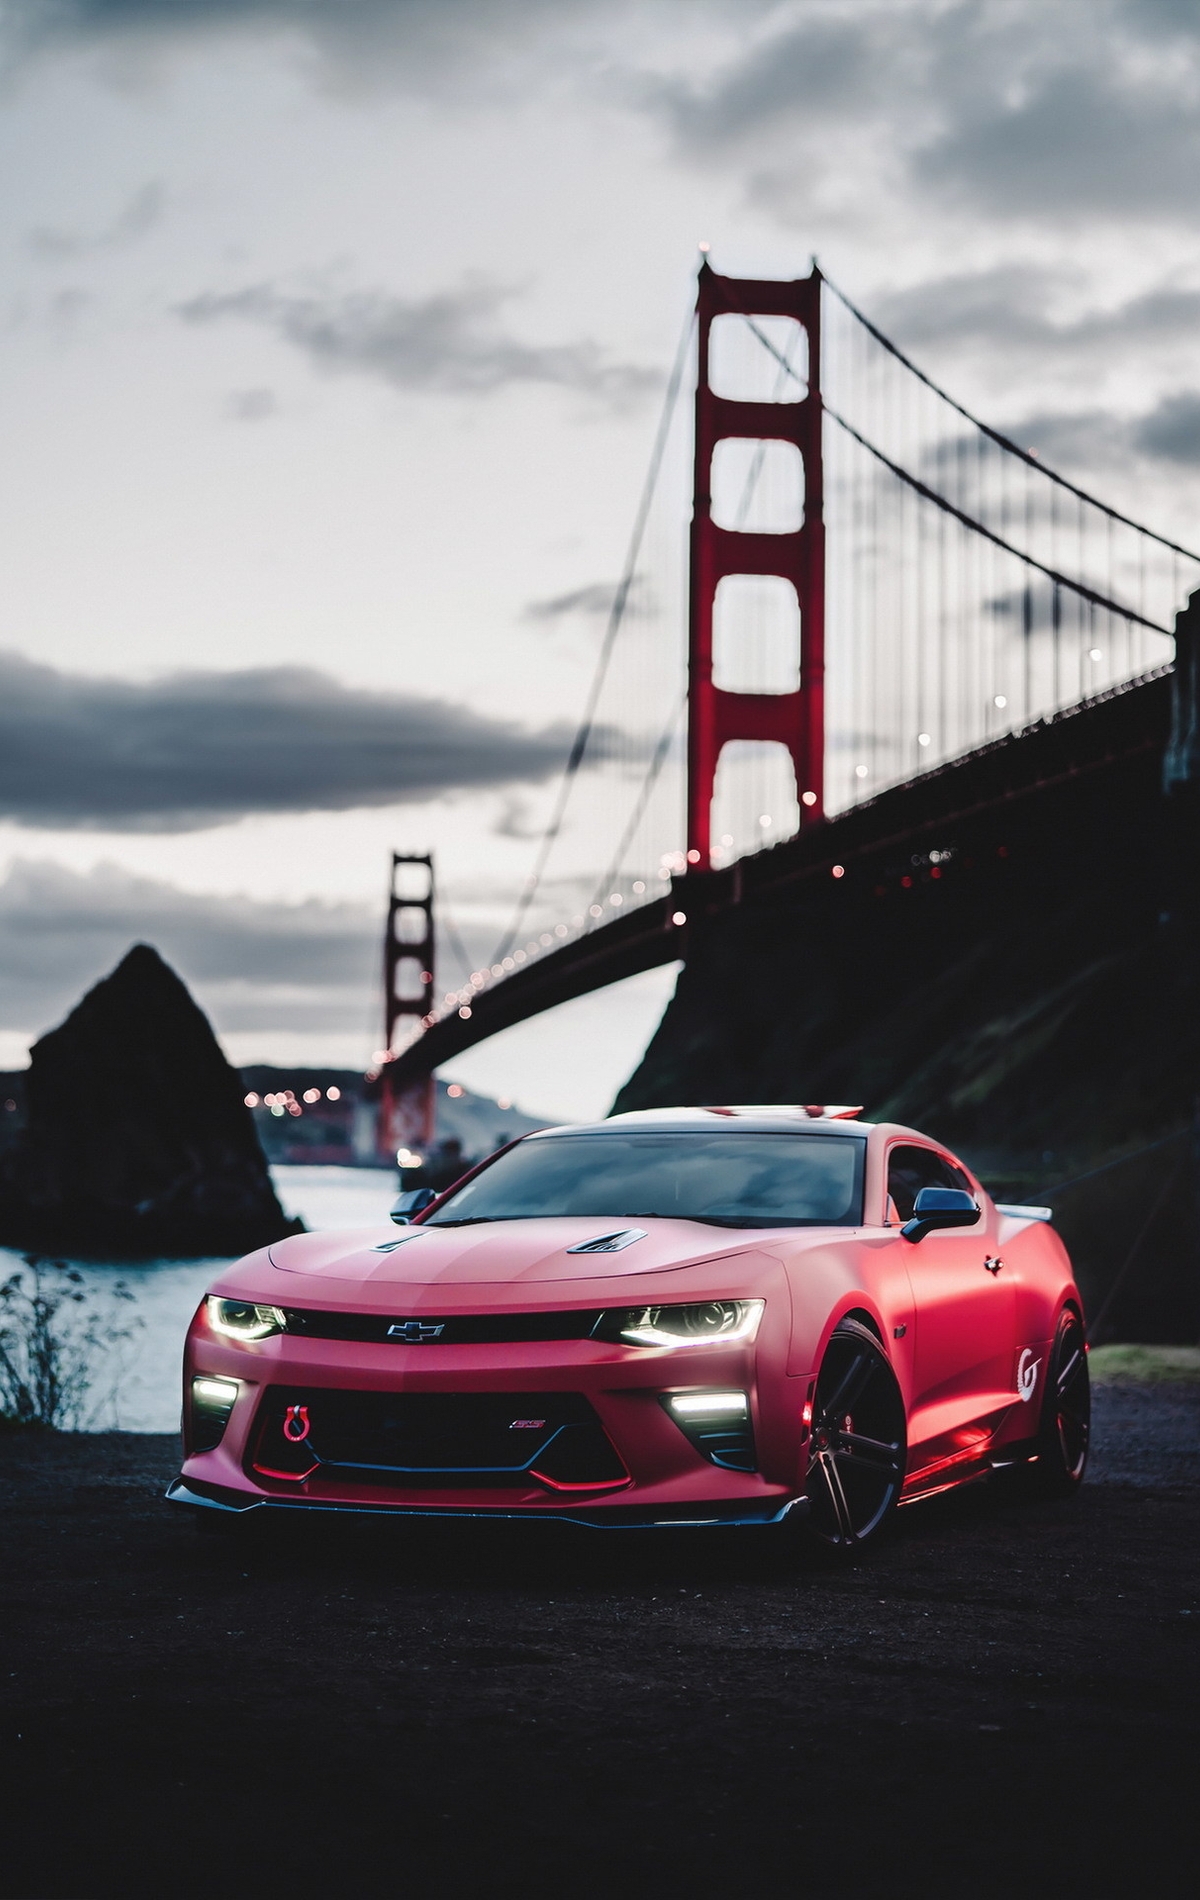 Image: Car, Chevrolett, Comaro, red, bridge, sea, darkness